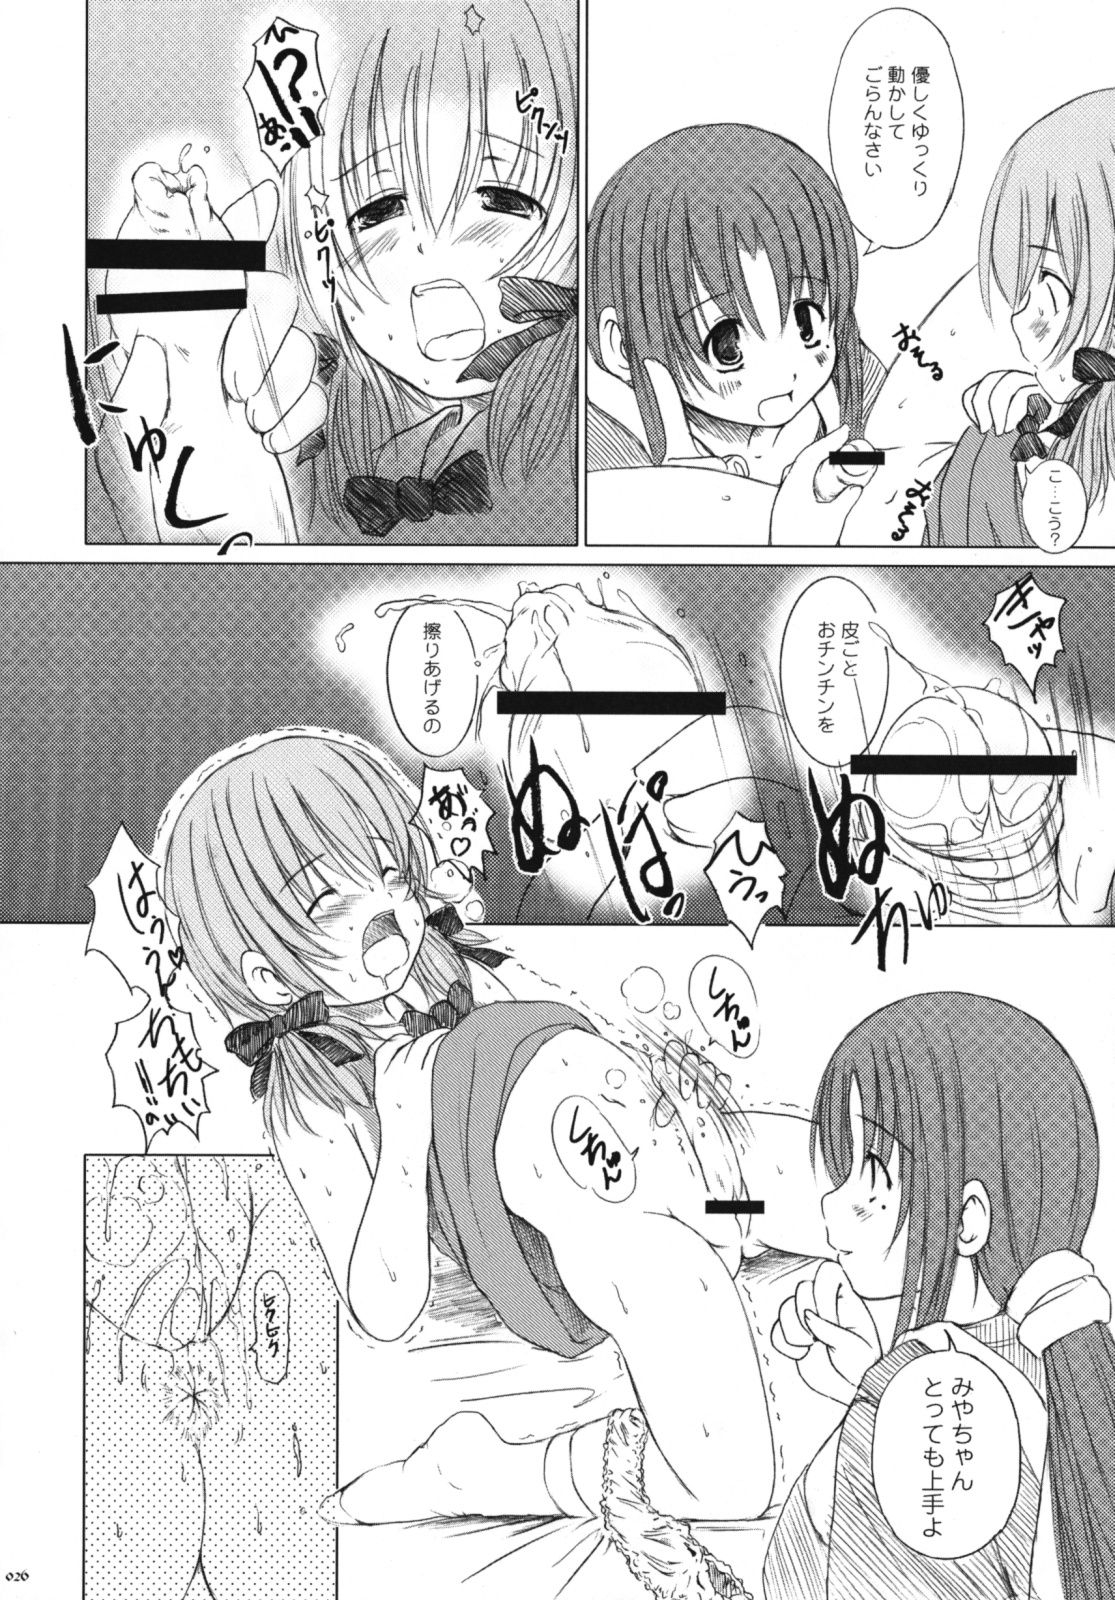 [Kesson Shoujo] Kesson Shoujo Memories 3 -Futanari Ero Manga- 24